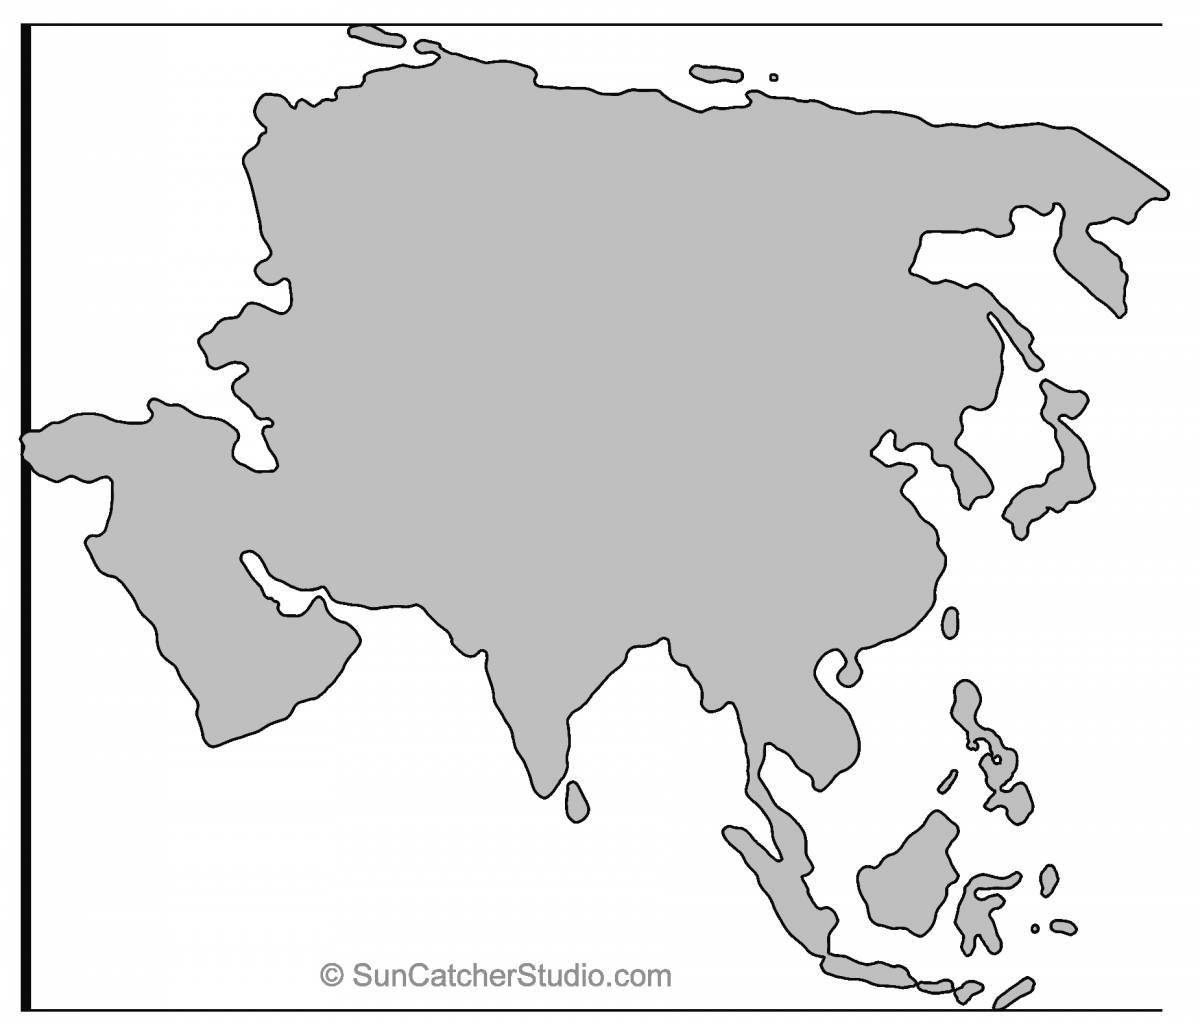 Раскраска анимированная карта евразии